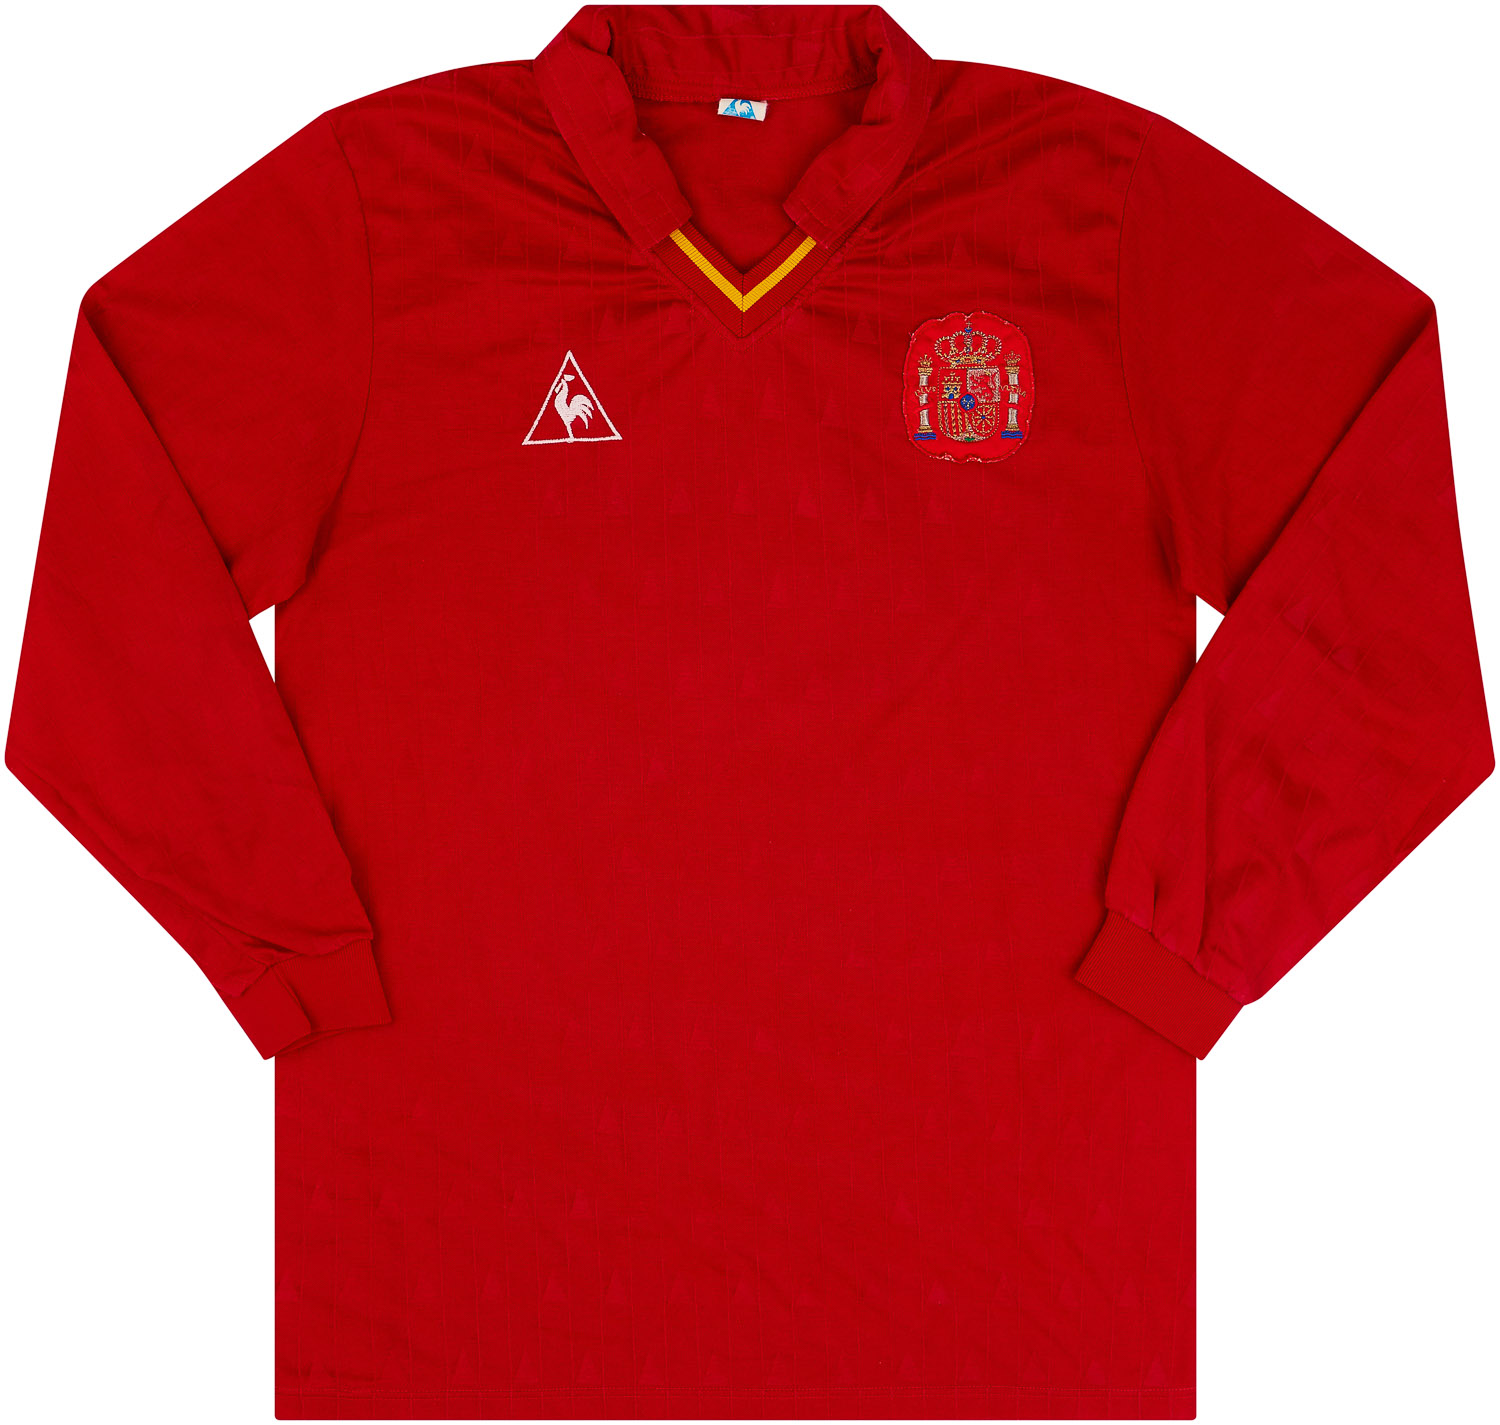 1988 Spain Match Worn Home Shirt #8 (íchel) v DDR